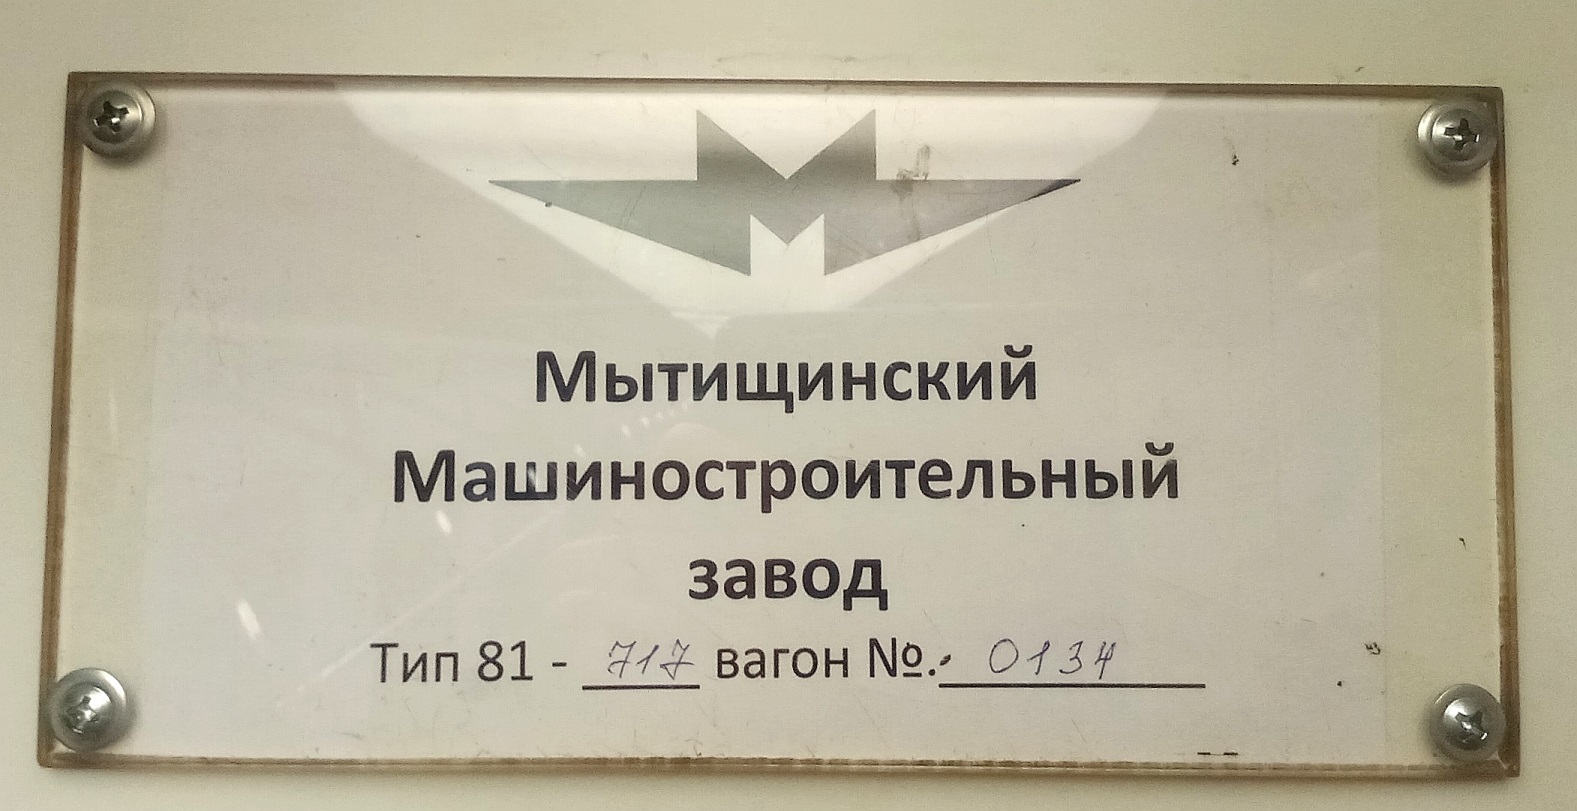 Москва, 81-717 (ММЗ) № 0134